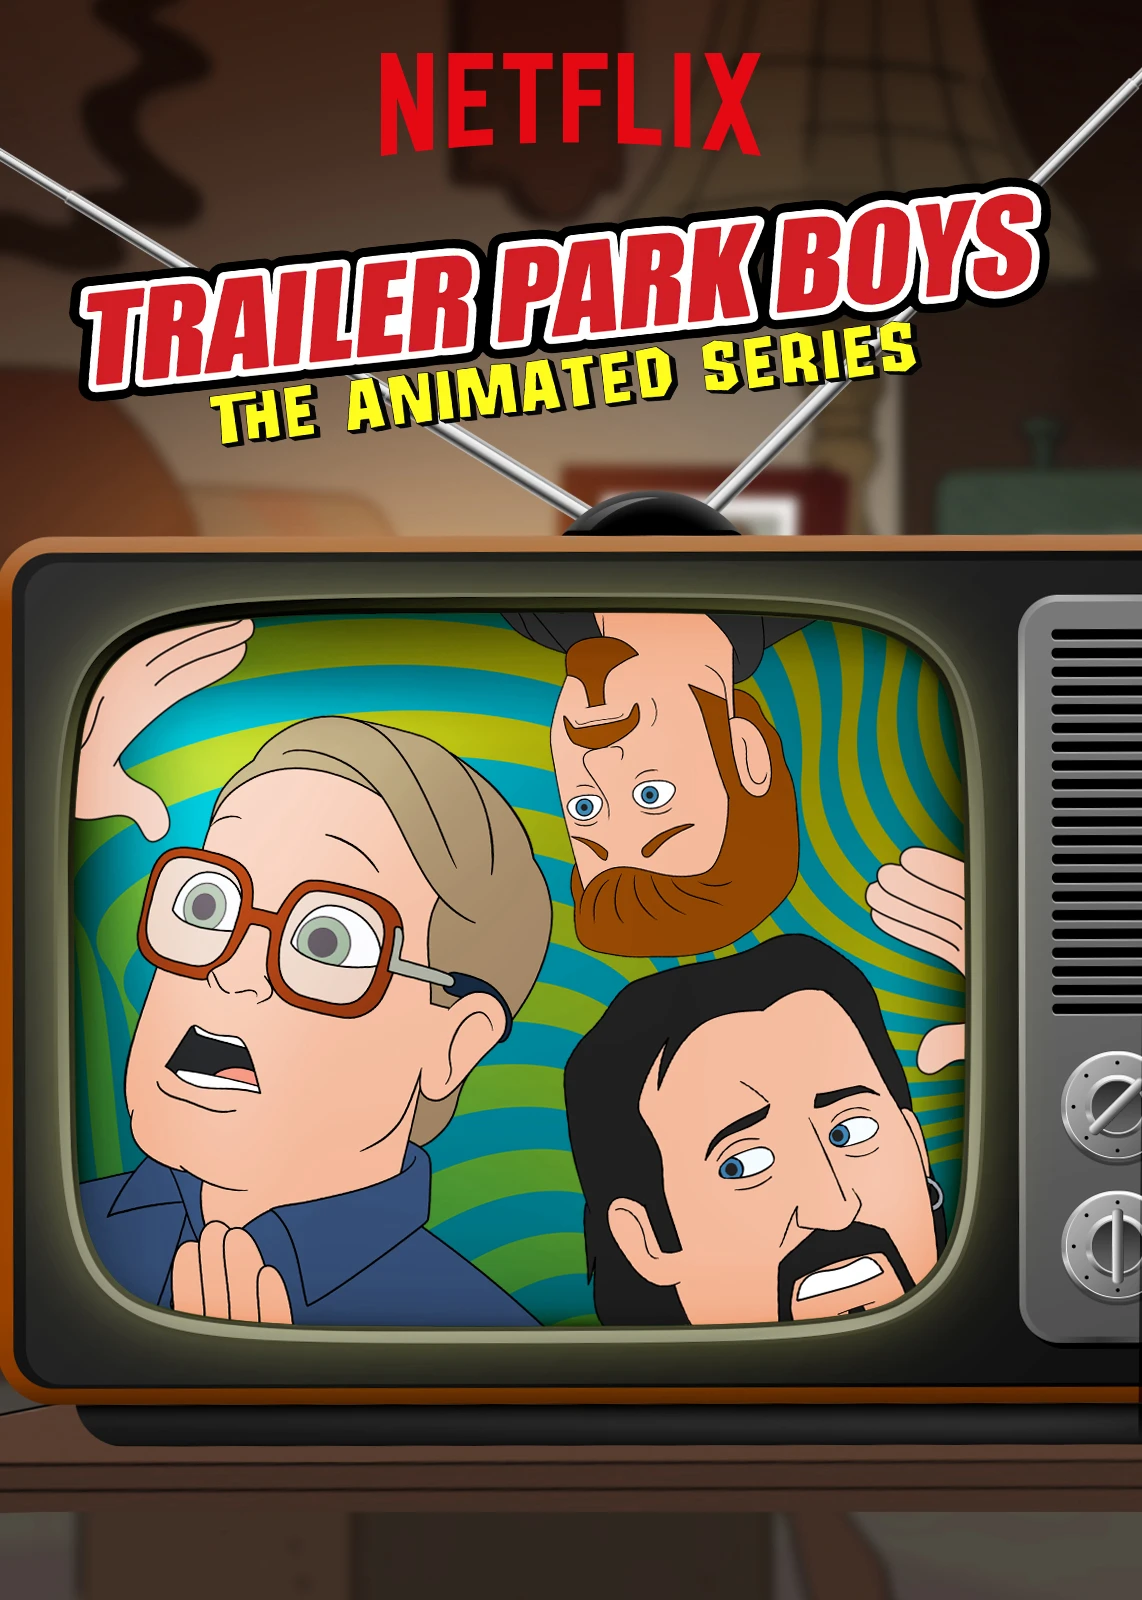 Bộ ba trộm cắp: Bản hoạt hình (Phần 1) | Trailer Park Boys: The Animated Series (Season 1) (2019)